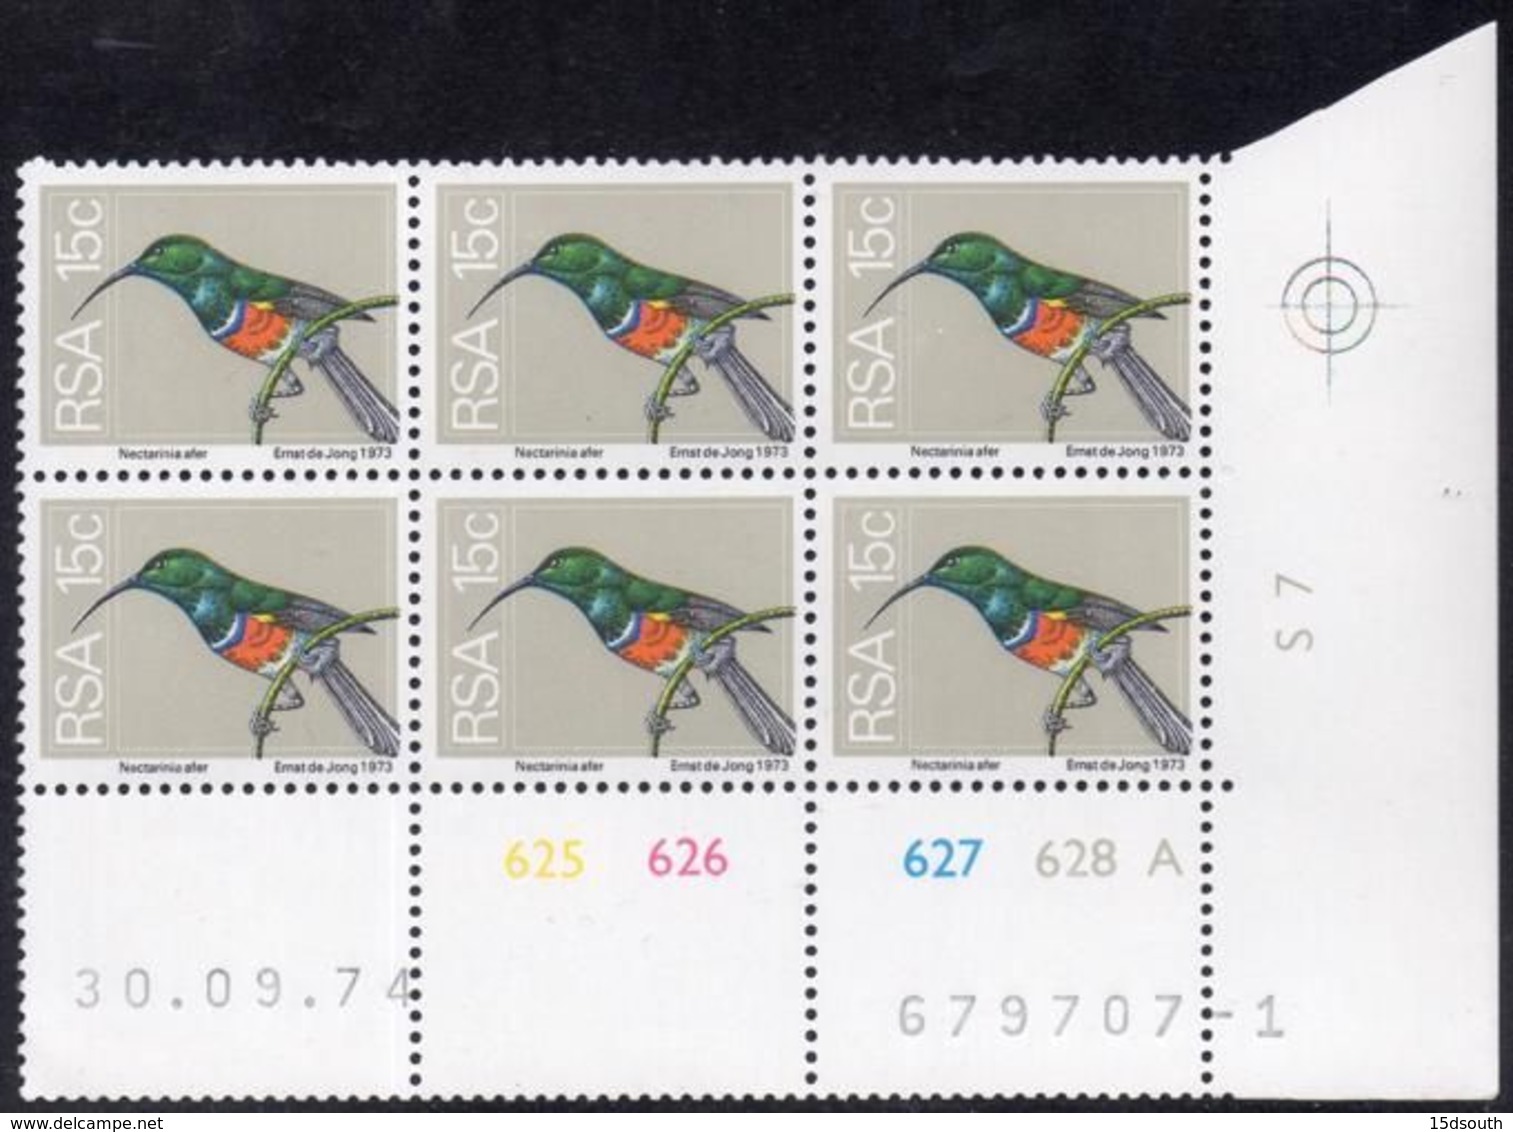 South Africa - 1974 2nd Definitive 15c Sunbird Control Block (1974.09.30) Pane A (**) # SG 358 - Blocs-feuillets